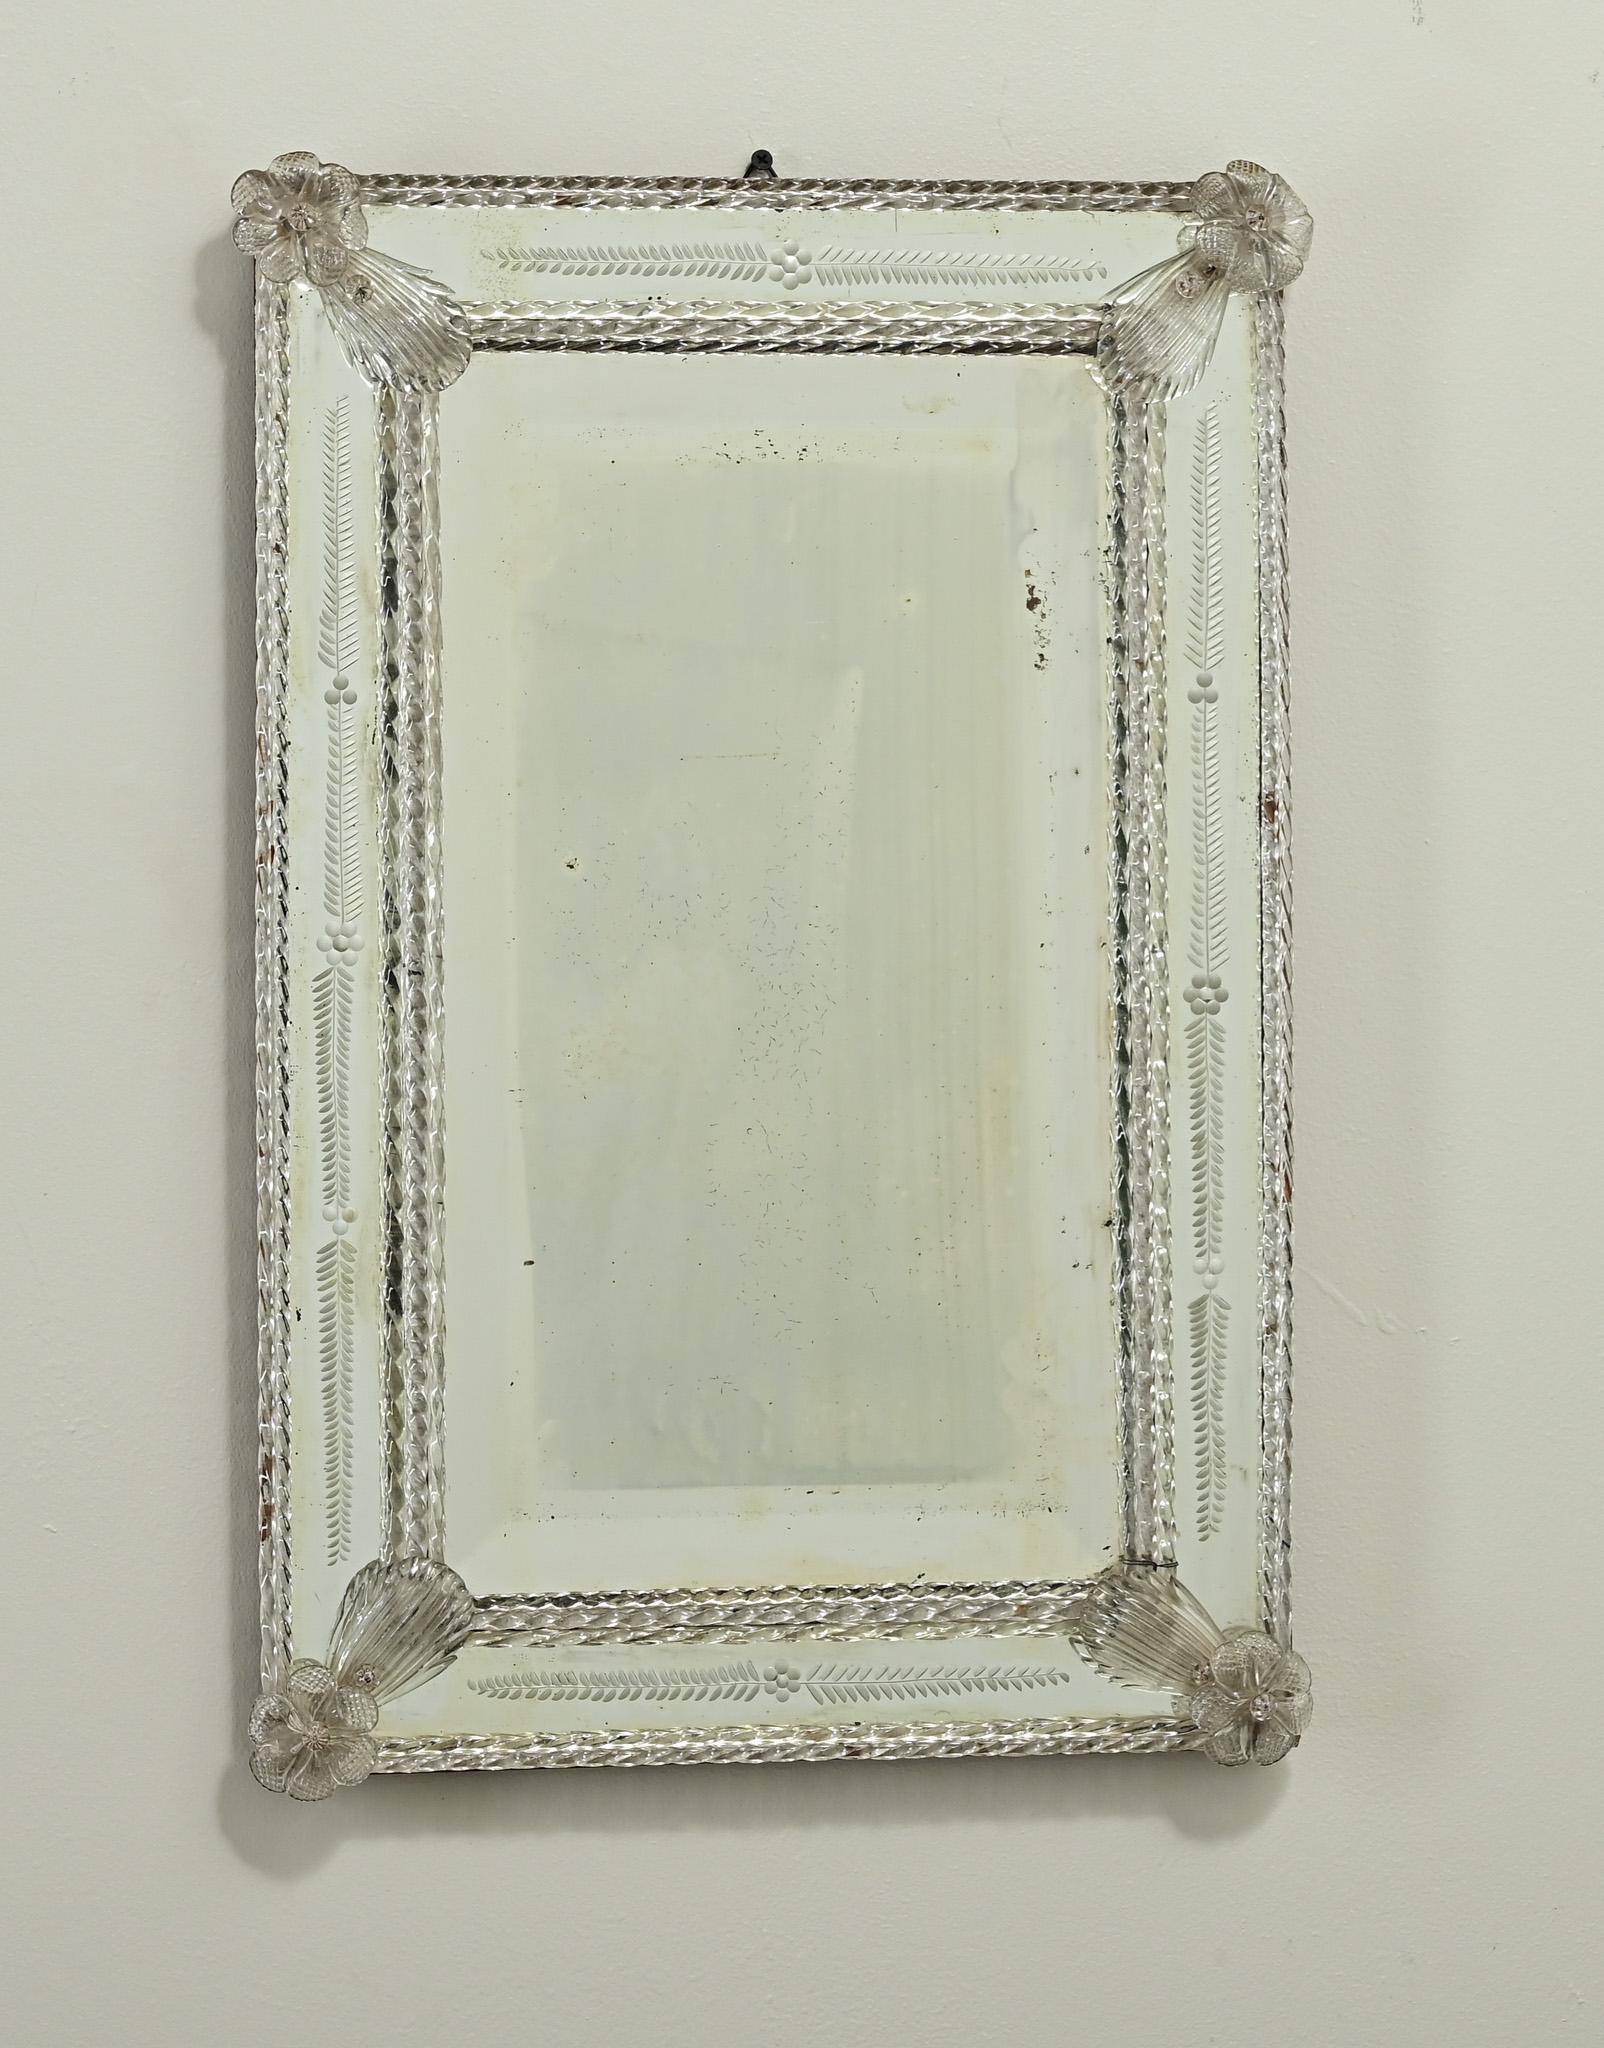 Le cadre de ce miroir vénitien unique provenant de Murano, en Italie, présente de magnifiques gravures florales et des applications de verre soufflé à la main. À l'intérieur du cadre se trouve la plaque de miroir biseautée d'origine, taillée à la